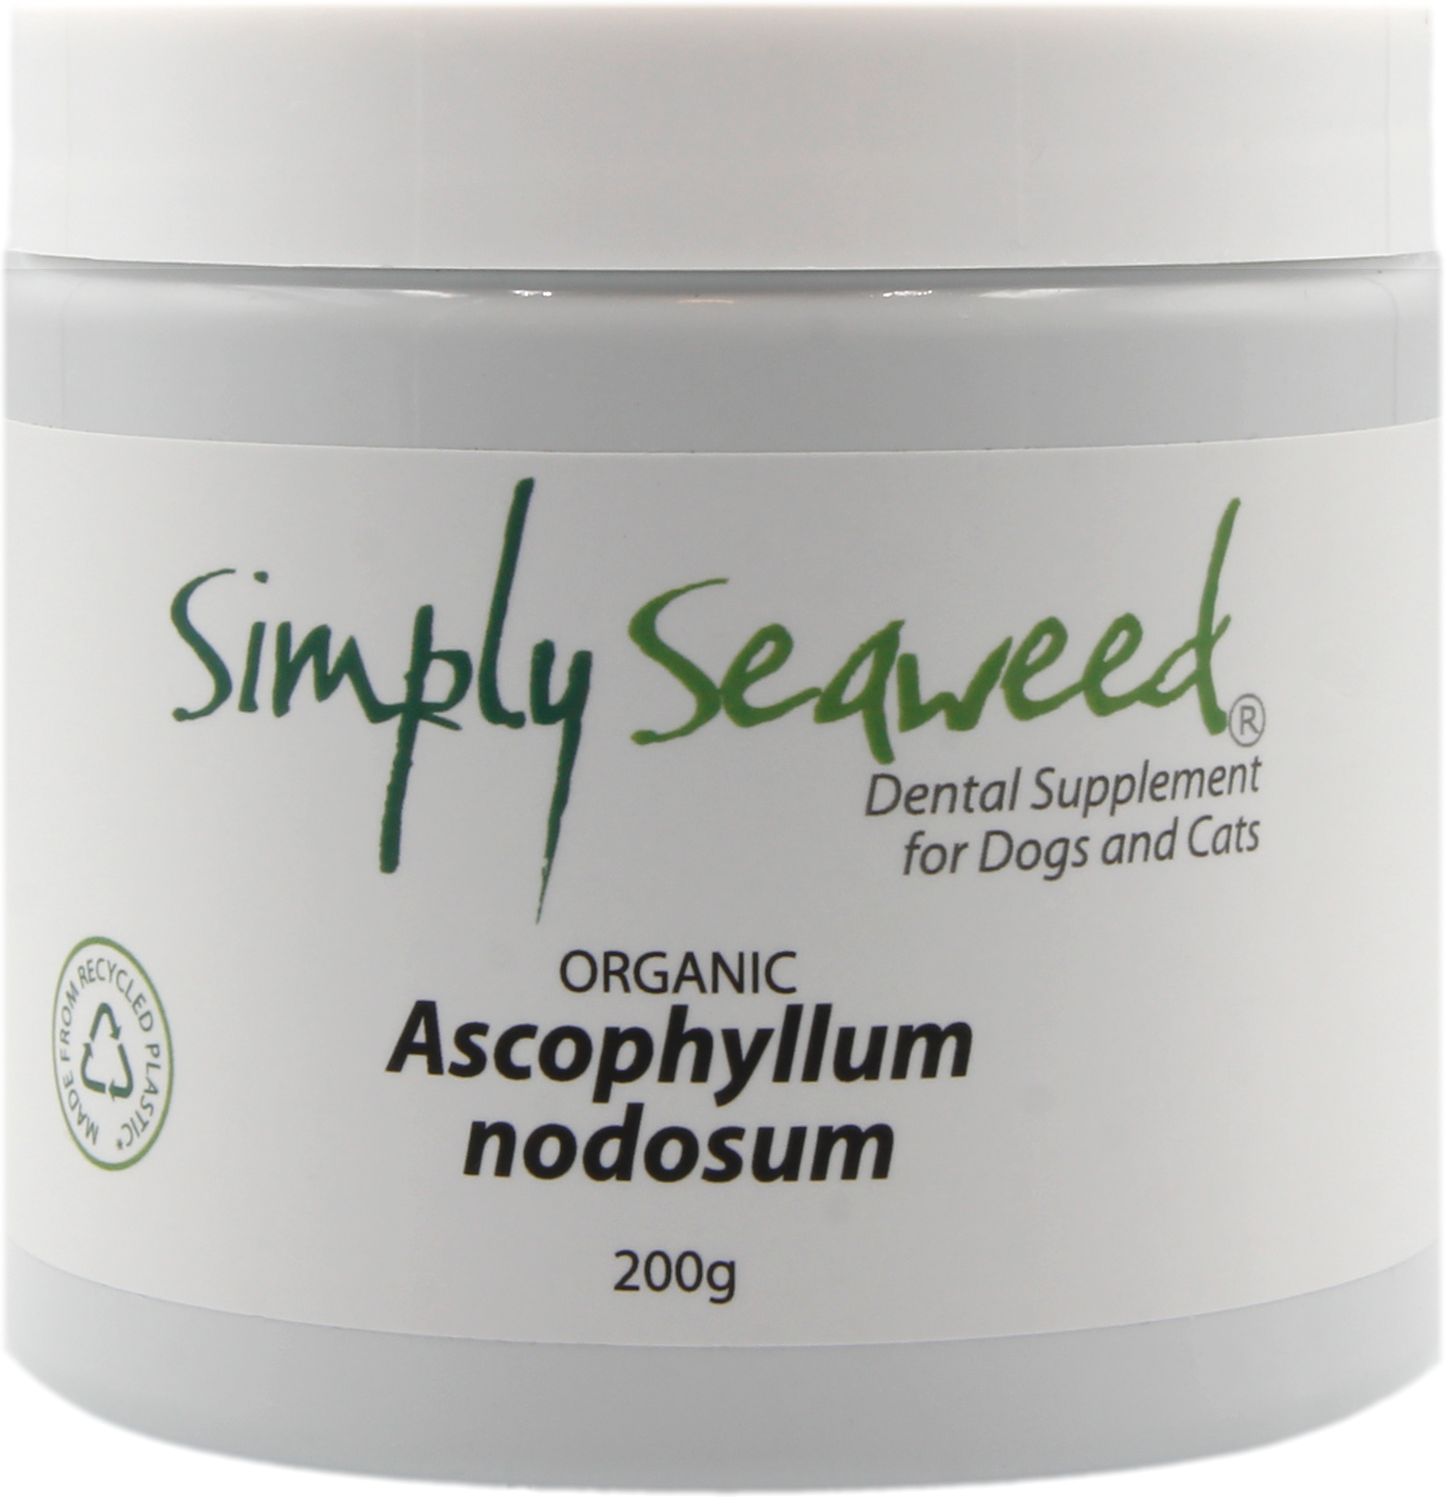 Simply Seaweed - Dental Supplement